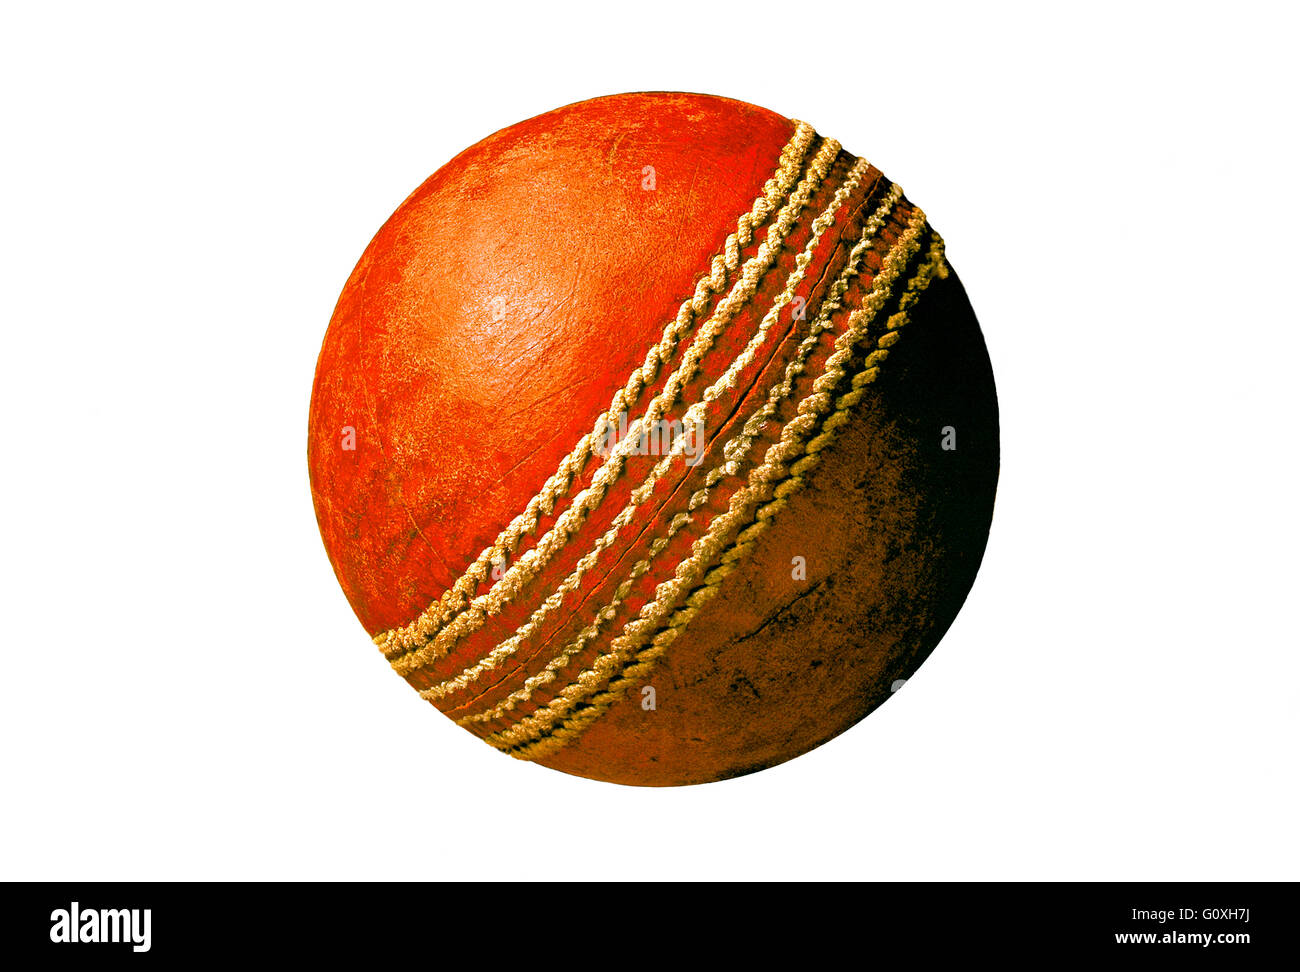 Bola de cricket viejos y usados de cuero rojo bola de críquet Foto de stock